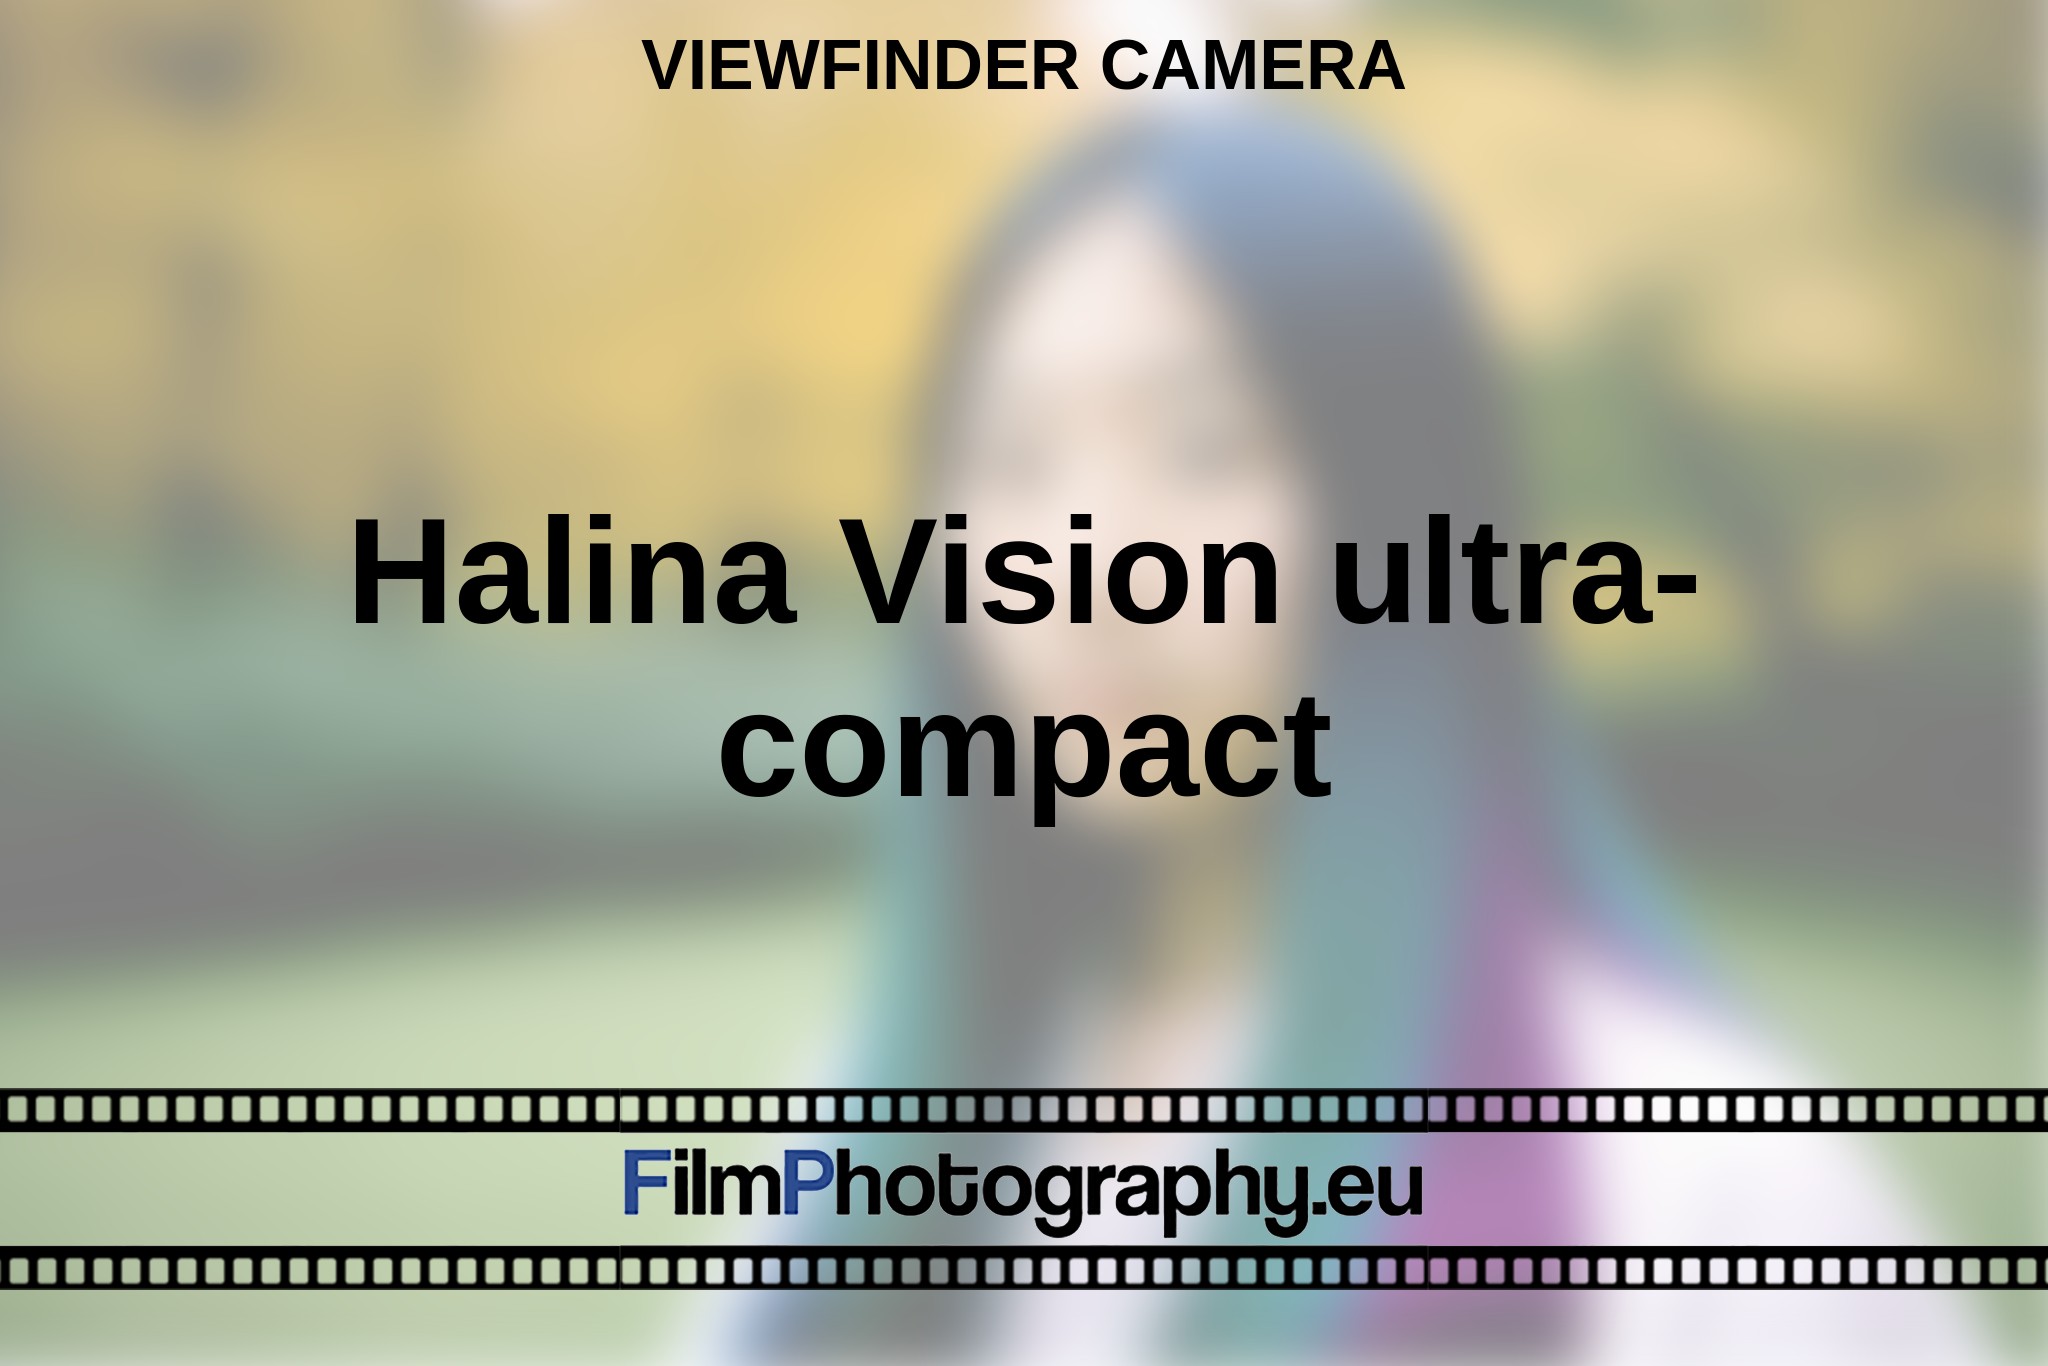 halina-vision-ultra-compact-viewfinder-camera-en-bnv.jpg